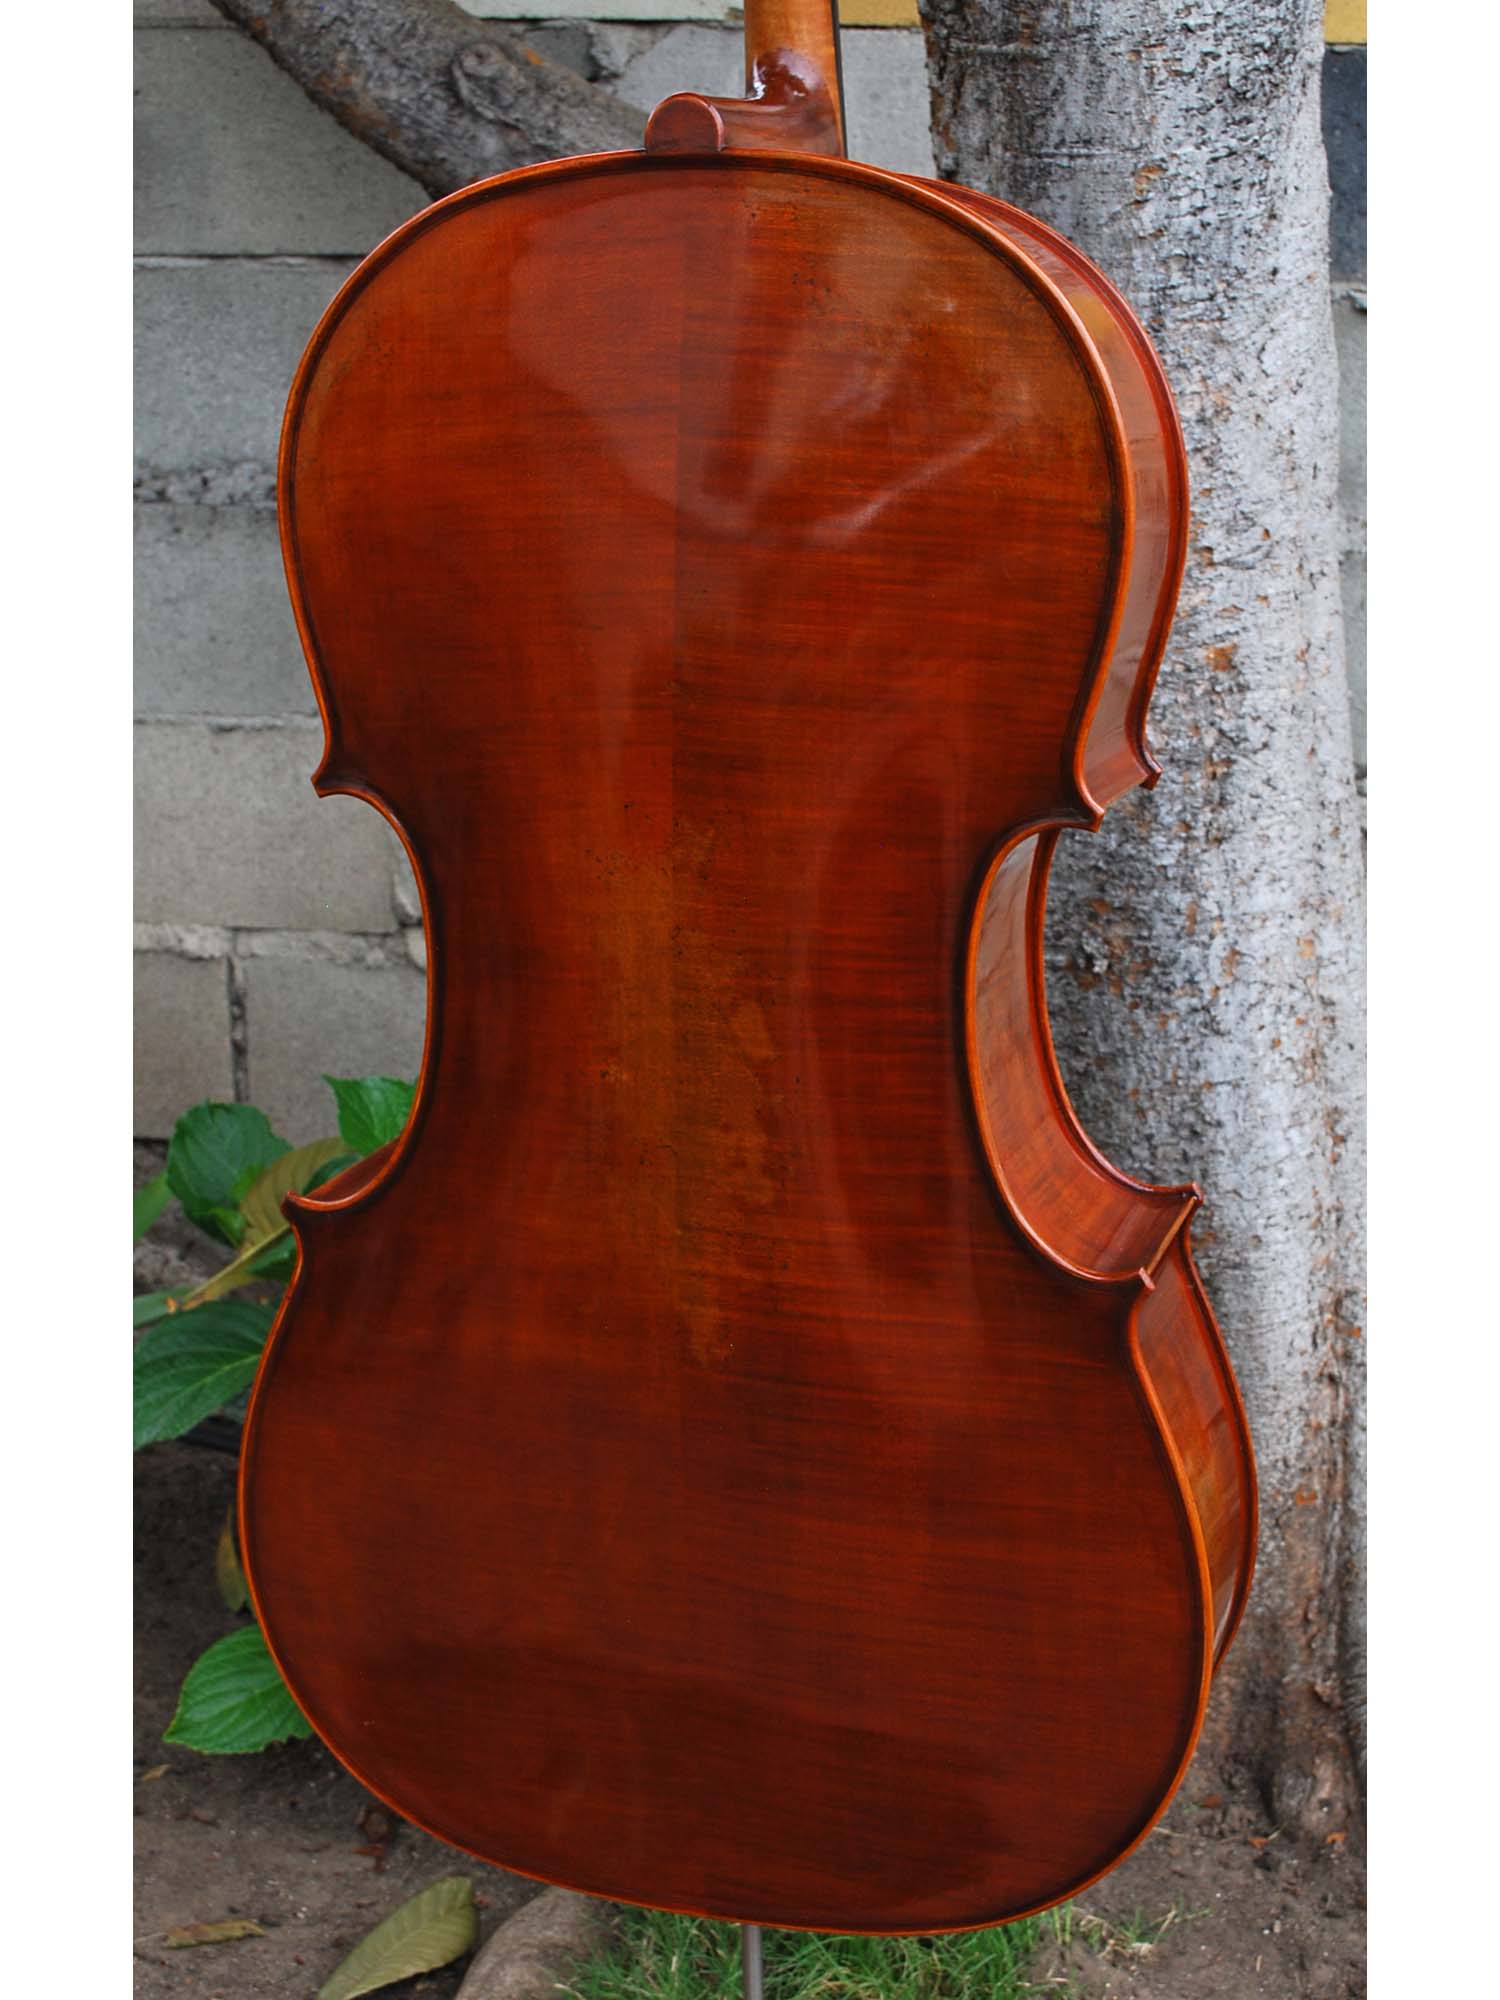 Rudoulf Doetsch model 701 'Guarneri Del Gesu' 4/4 Cello